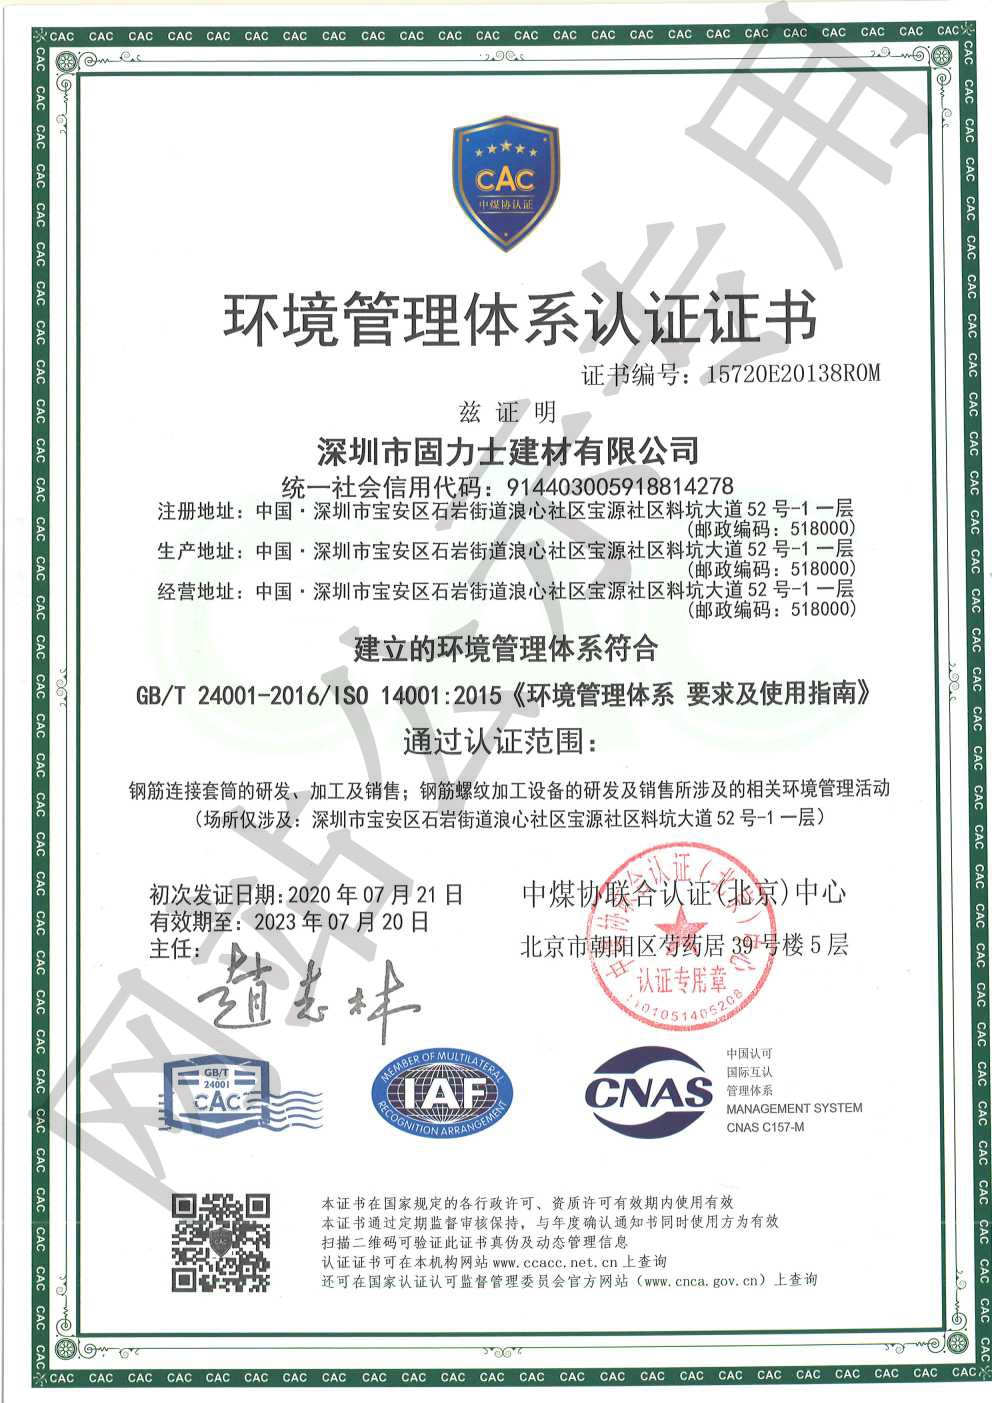 定城镇ISO14001证书